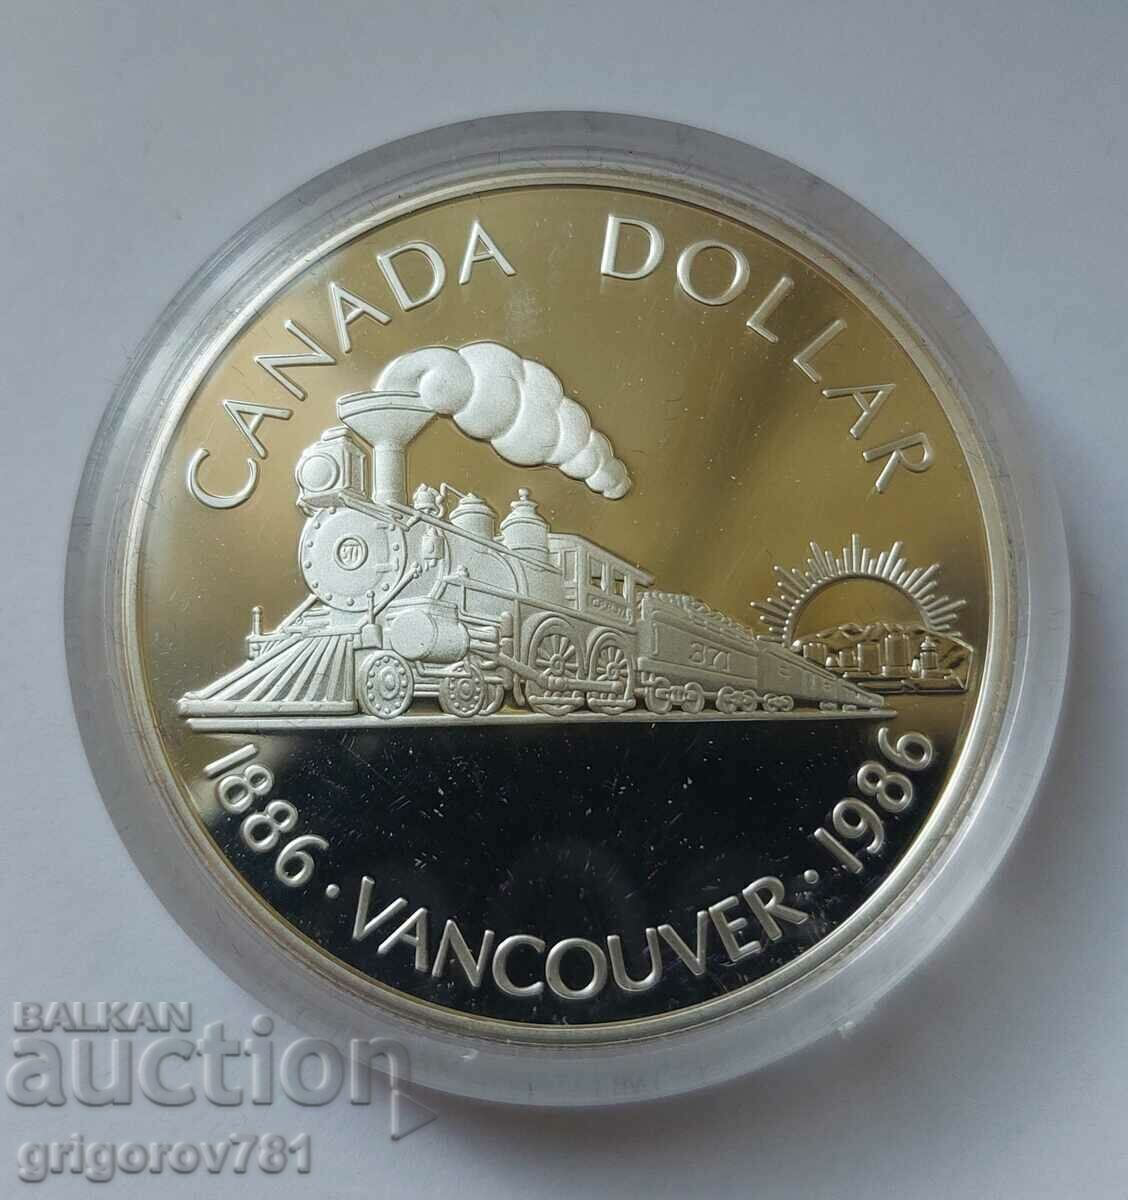 1 dolar de argint Canada 1986 Proof - Monedă de argint